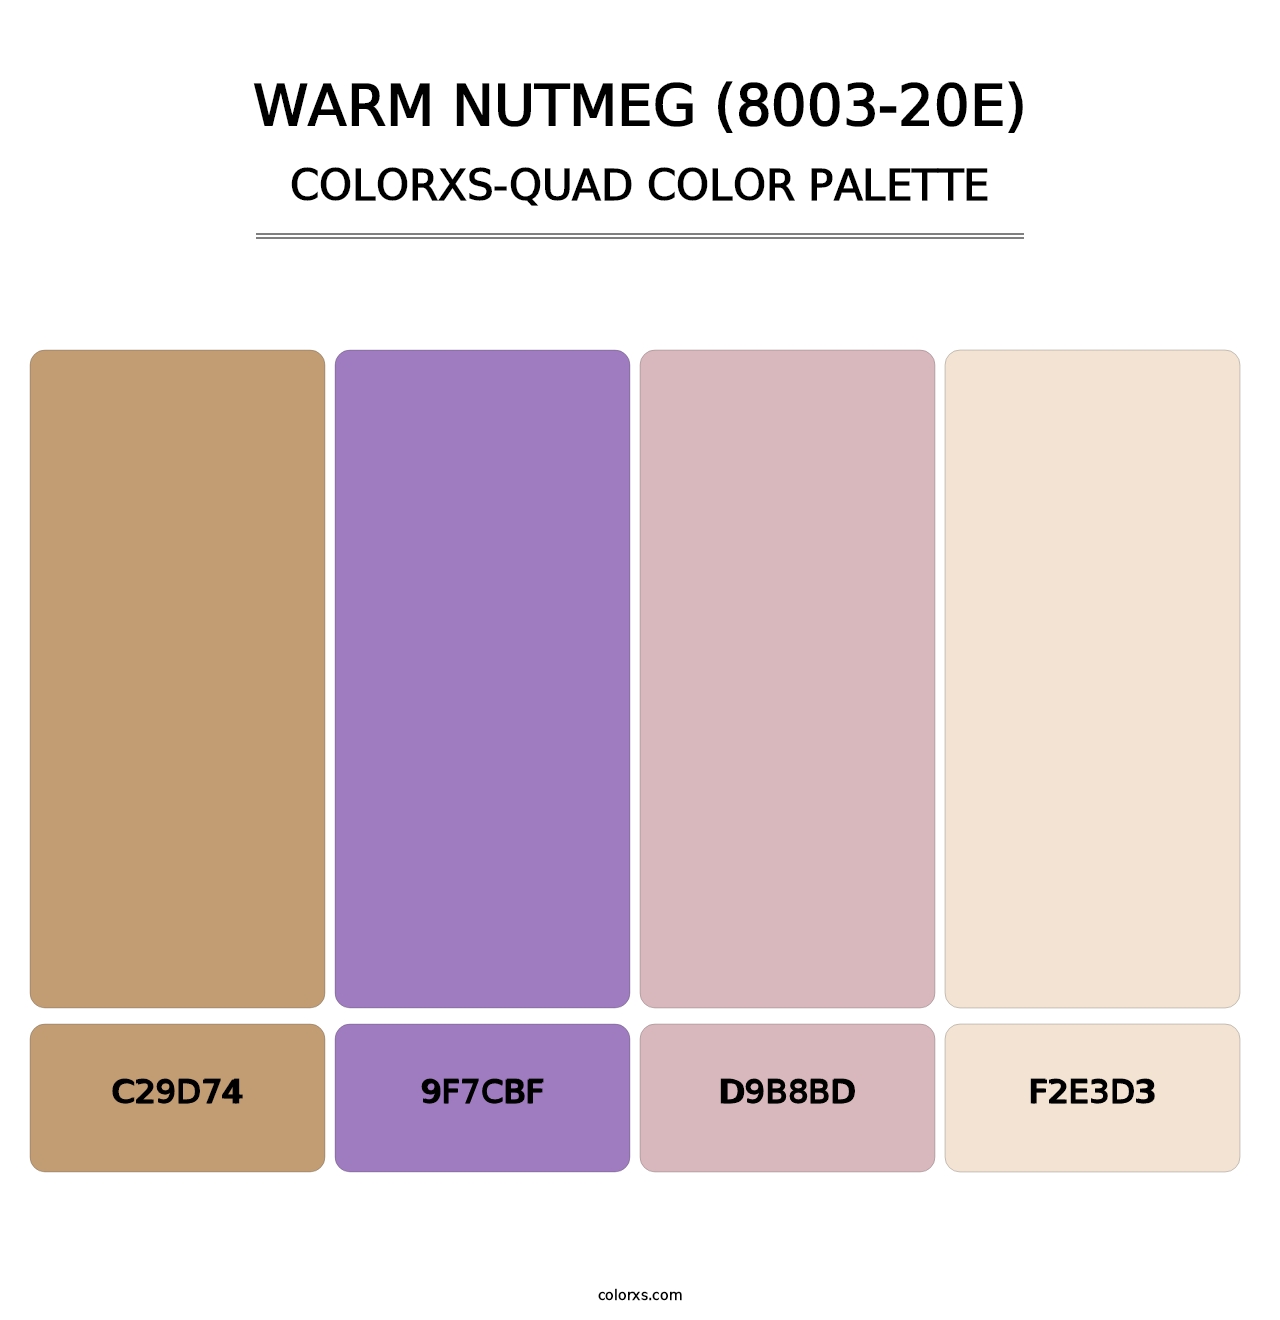 Warm Nutmeg (8003-20E) - Colorxs Quad Palette